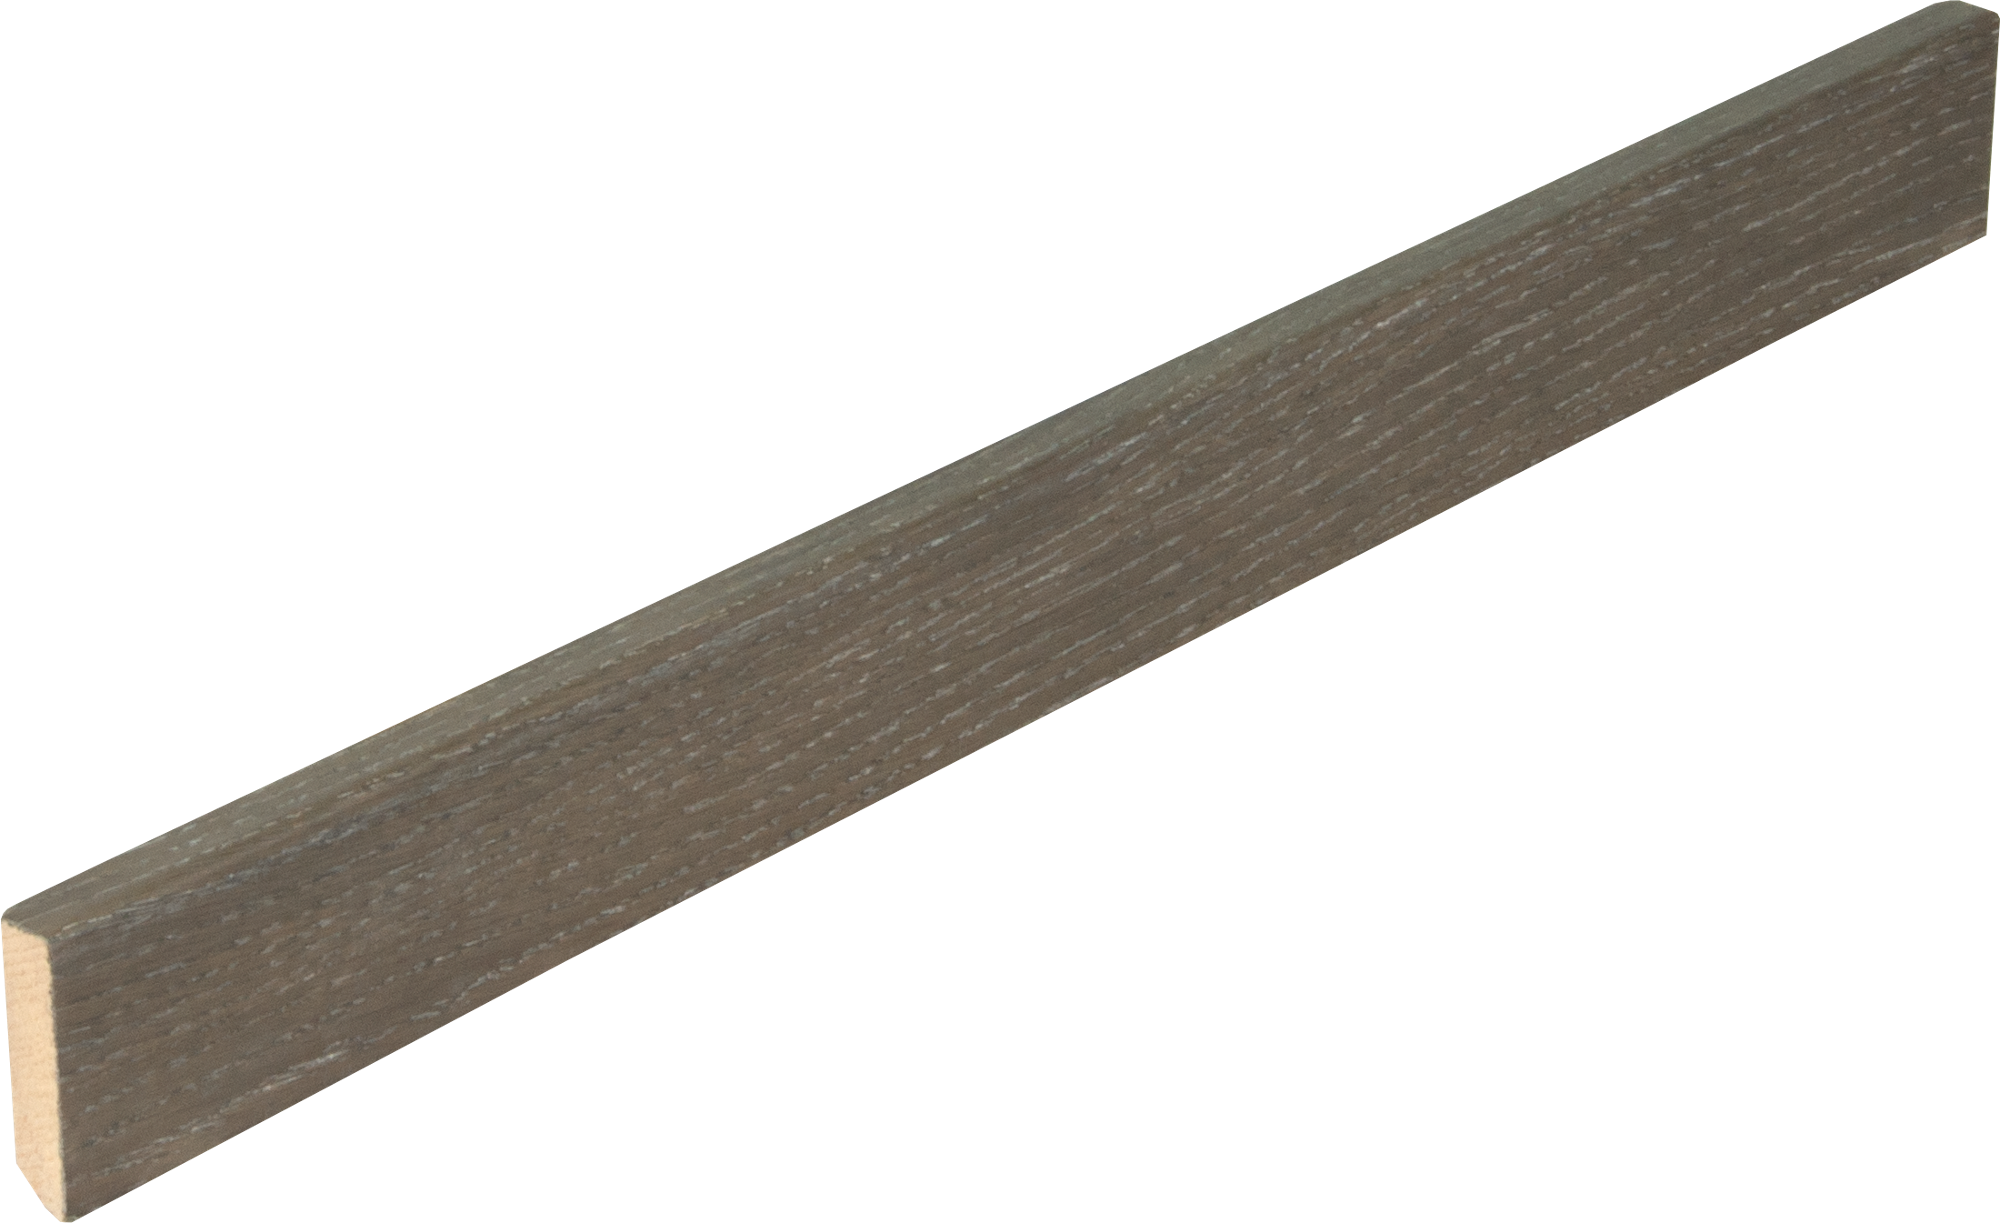 Battiscopa impiallacciato, Rovere Graphite
16x58x2700 mm